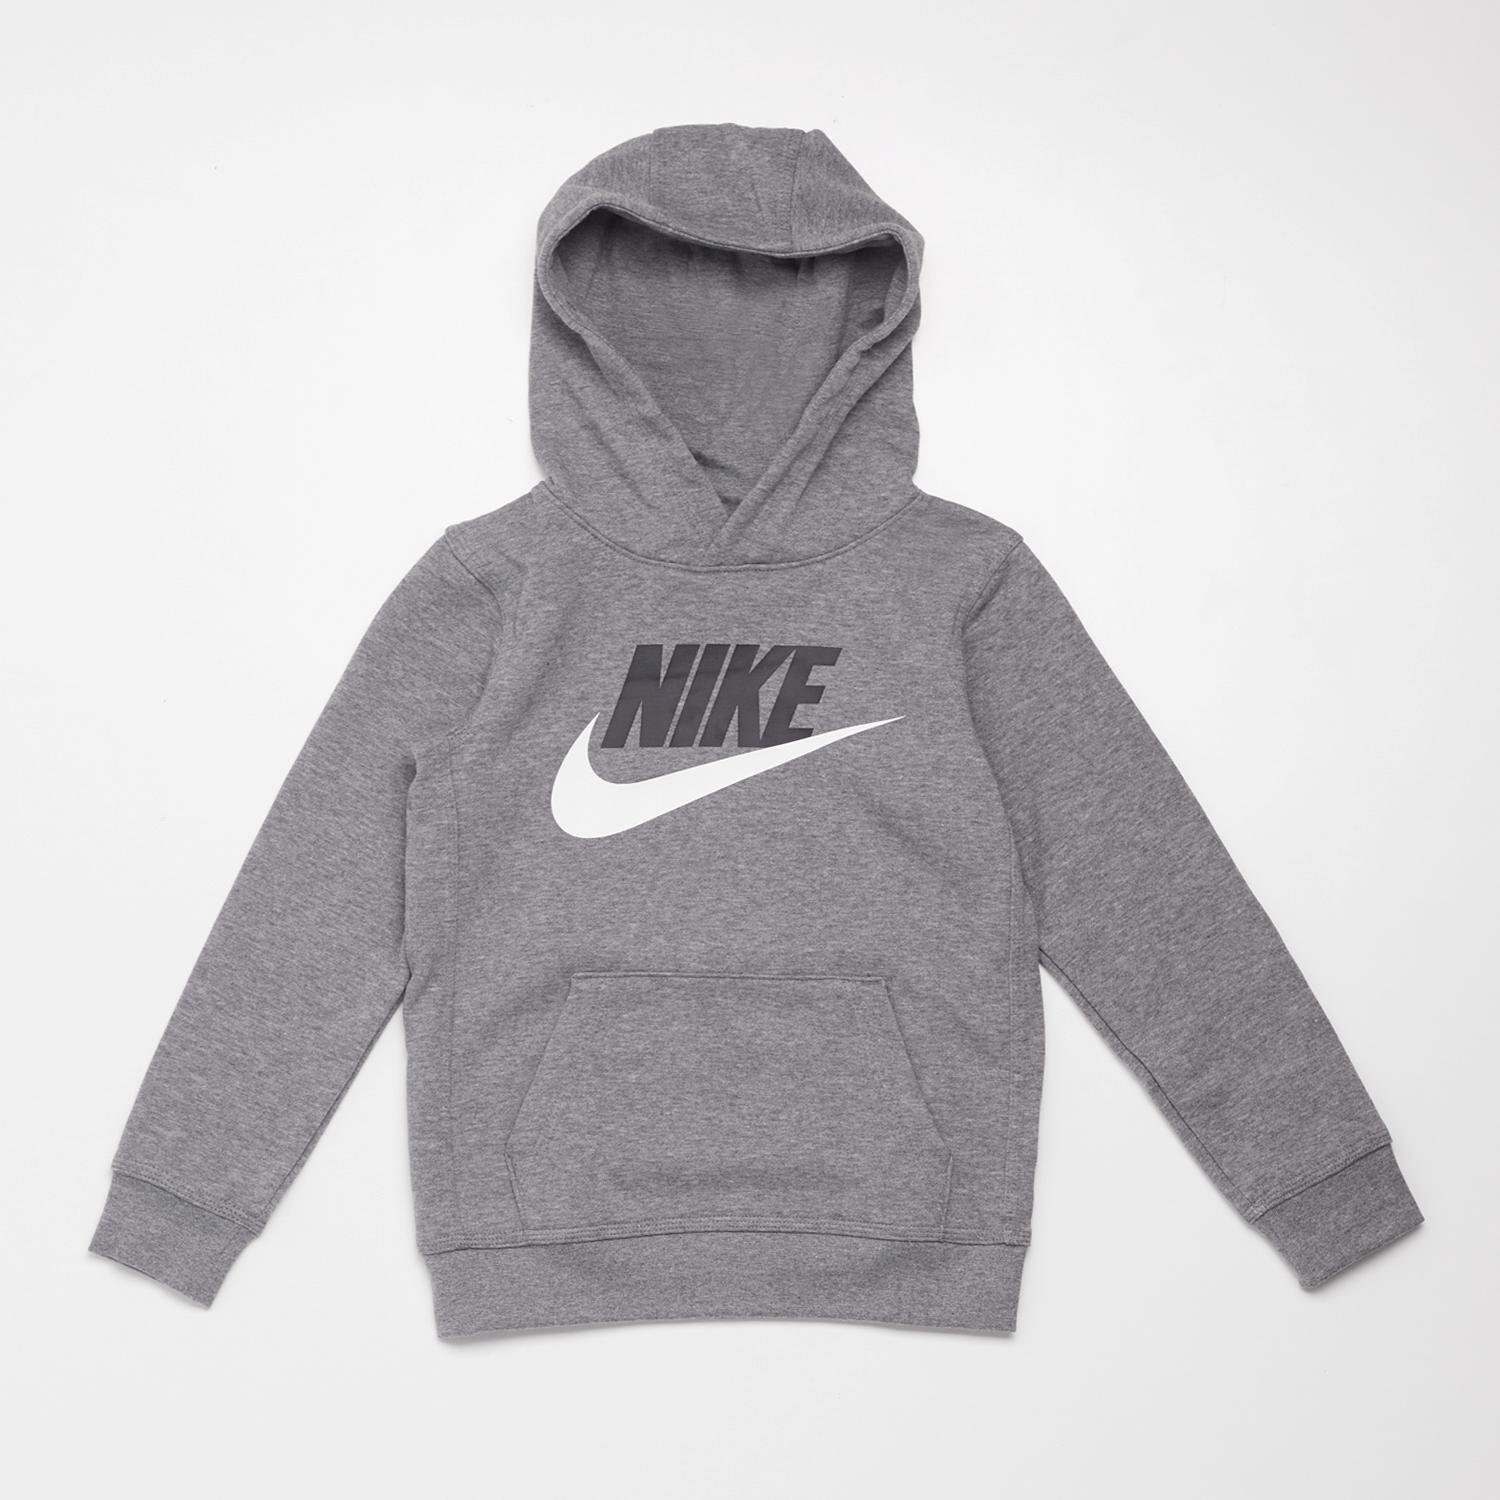 Nike Nike trui grijs kinderen kinderen